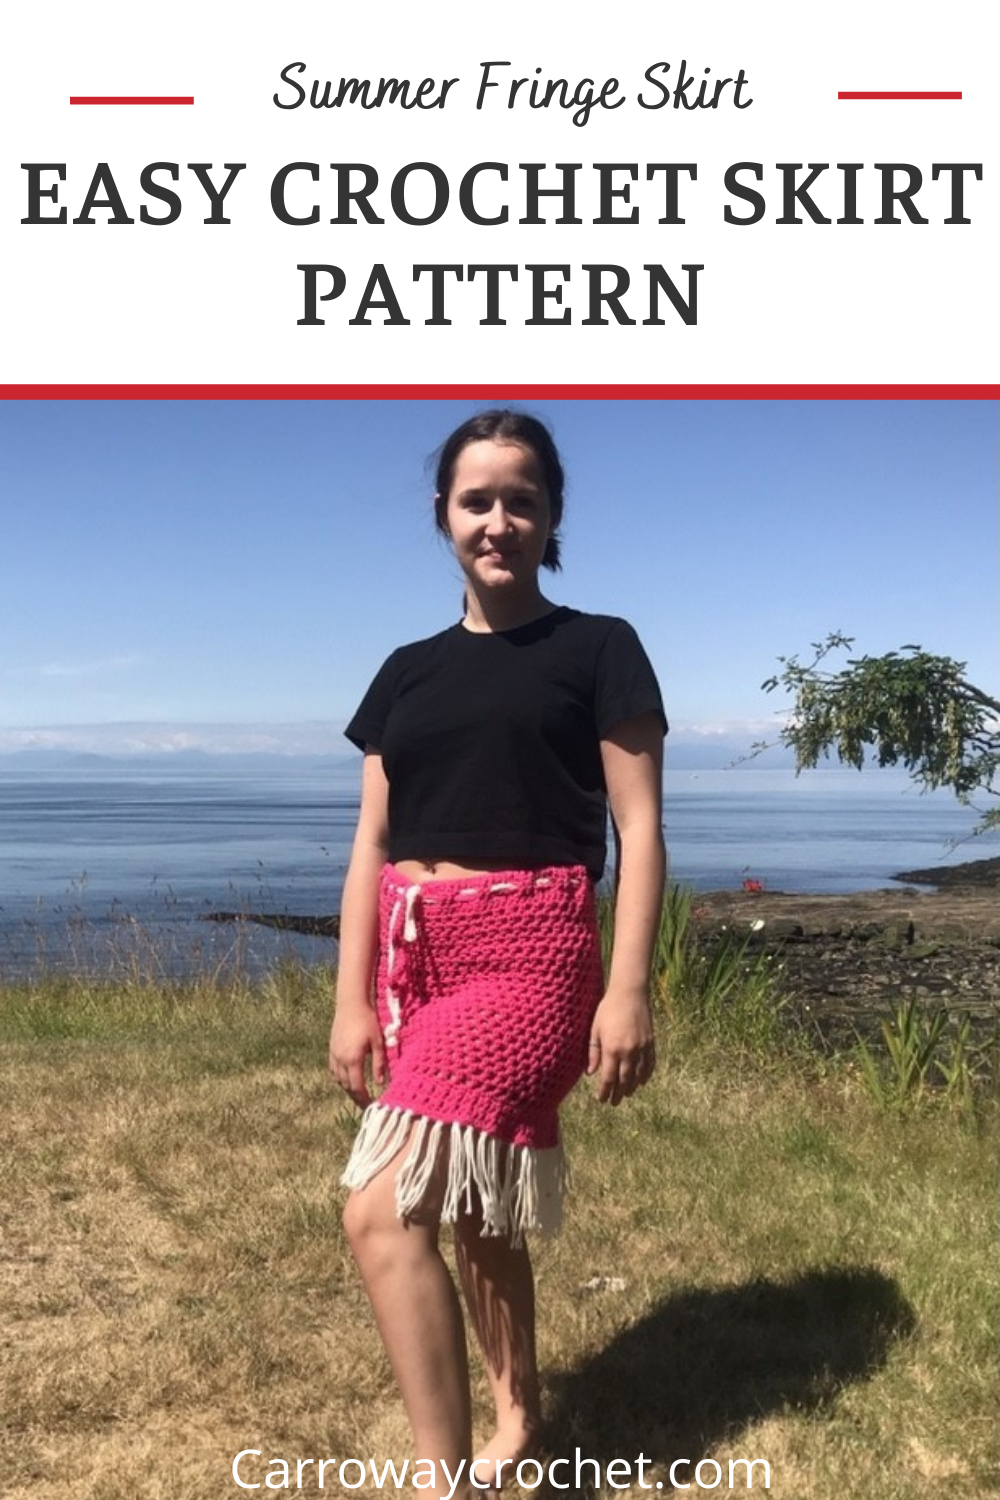 Summer Fringe Skirt Pattern